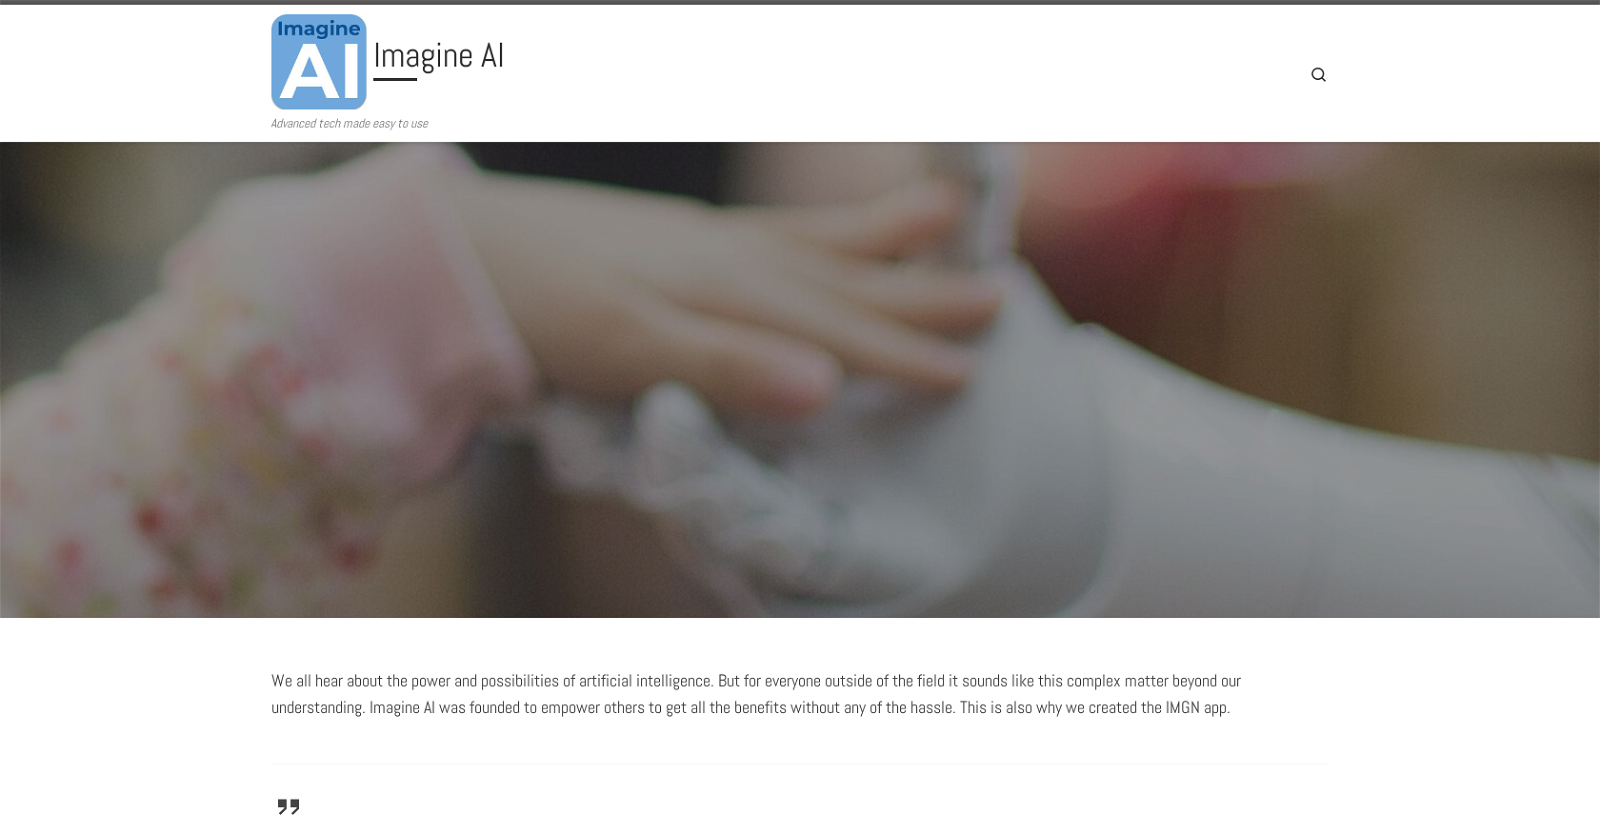 IMGN - Image Engine website